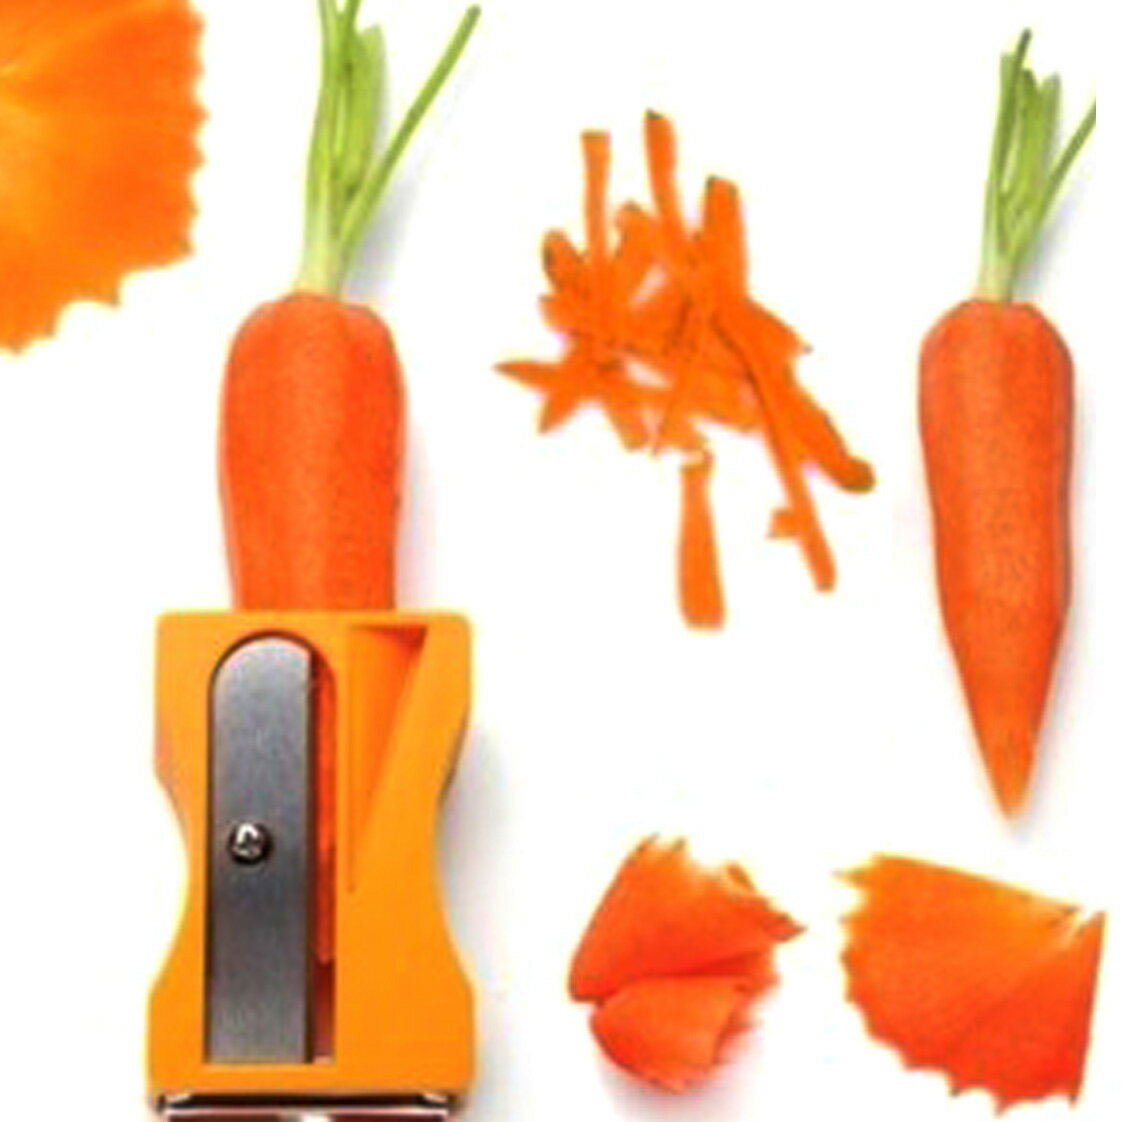 創意胡蘿卜土豆蔬菜水果削皮器去皮器多功能刨旋轉廚房實用小工具